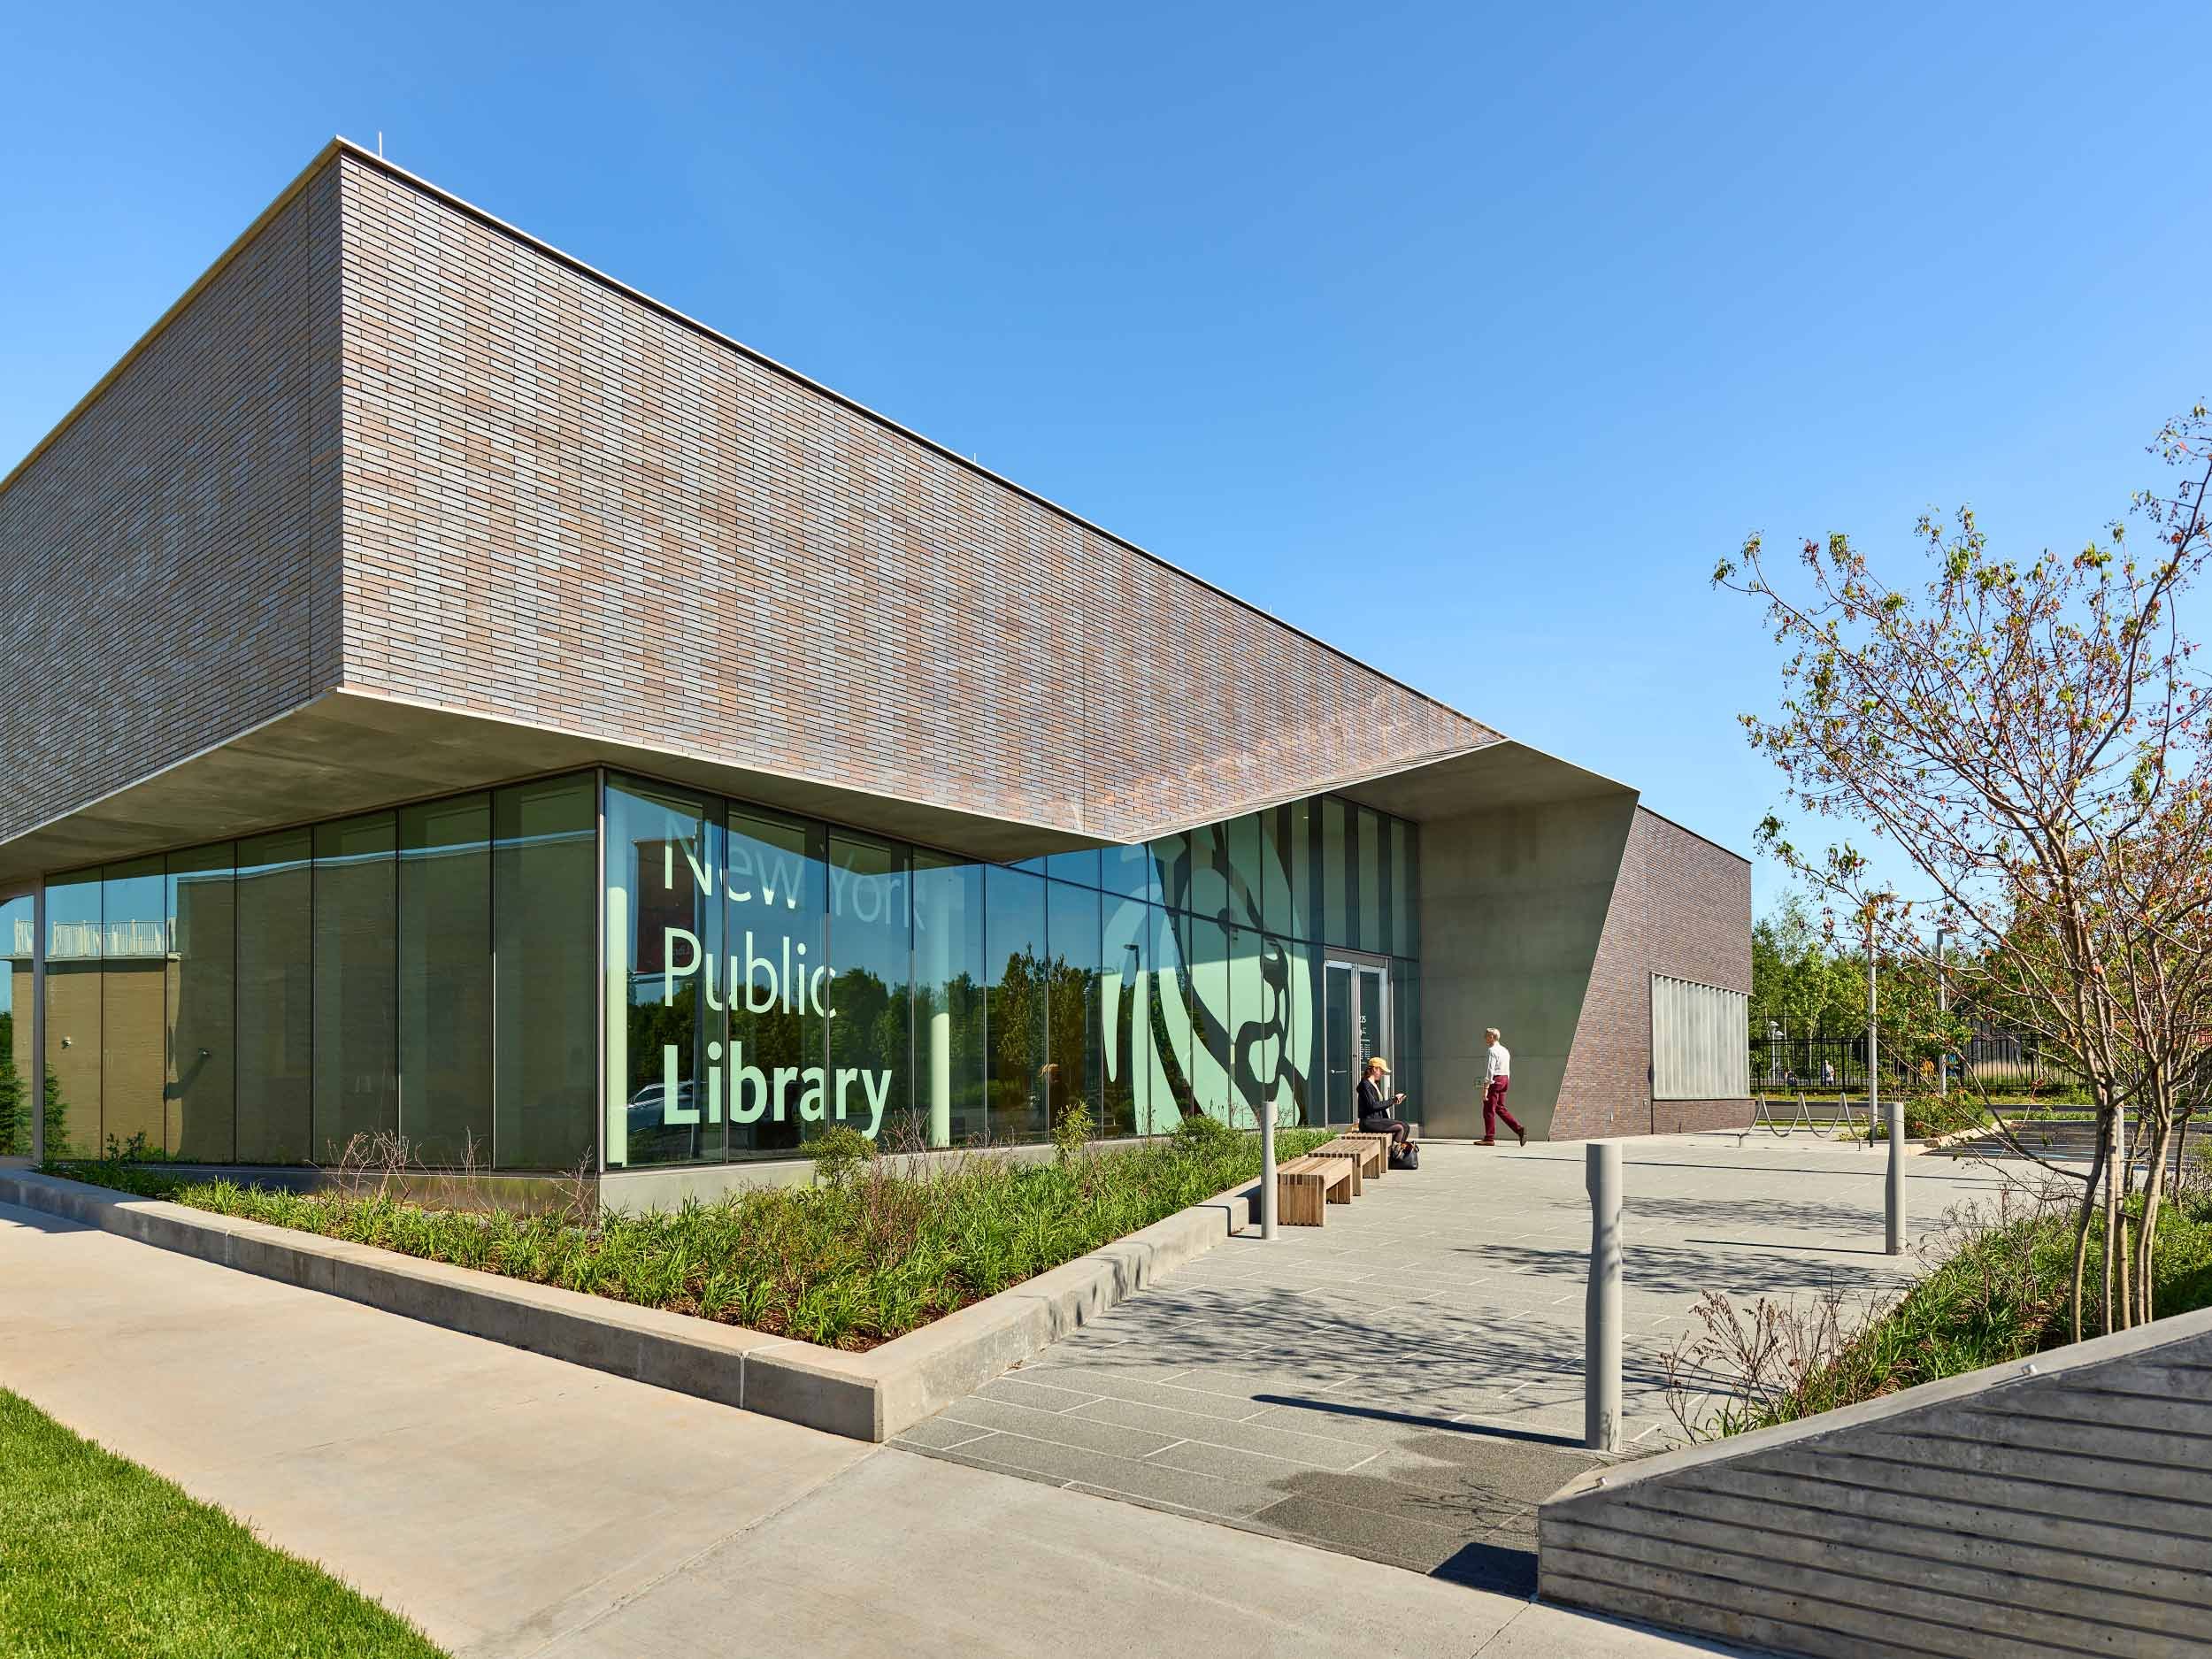  Charleston Library, Free Library of NY ikon.5 architects Staten Island, NY 